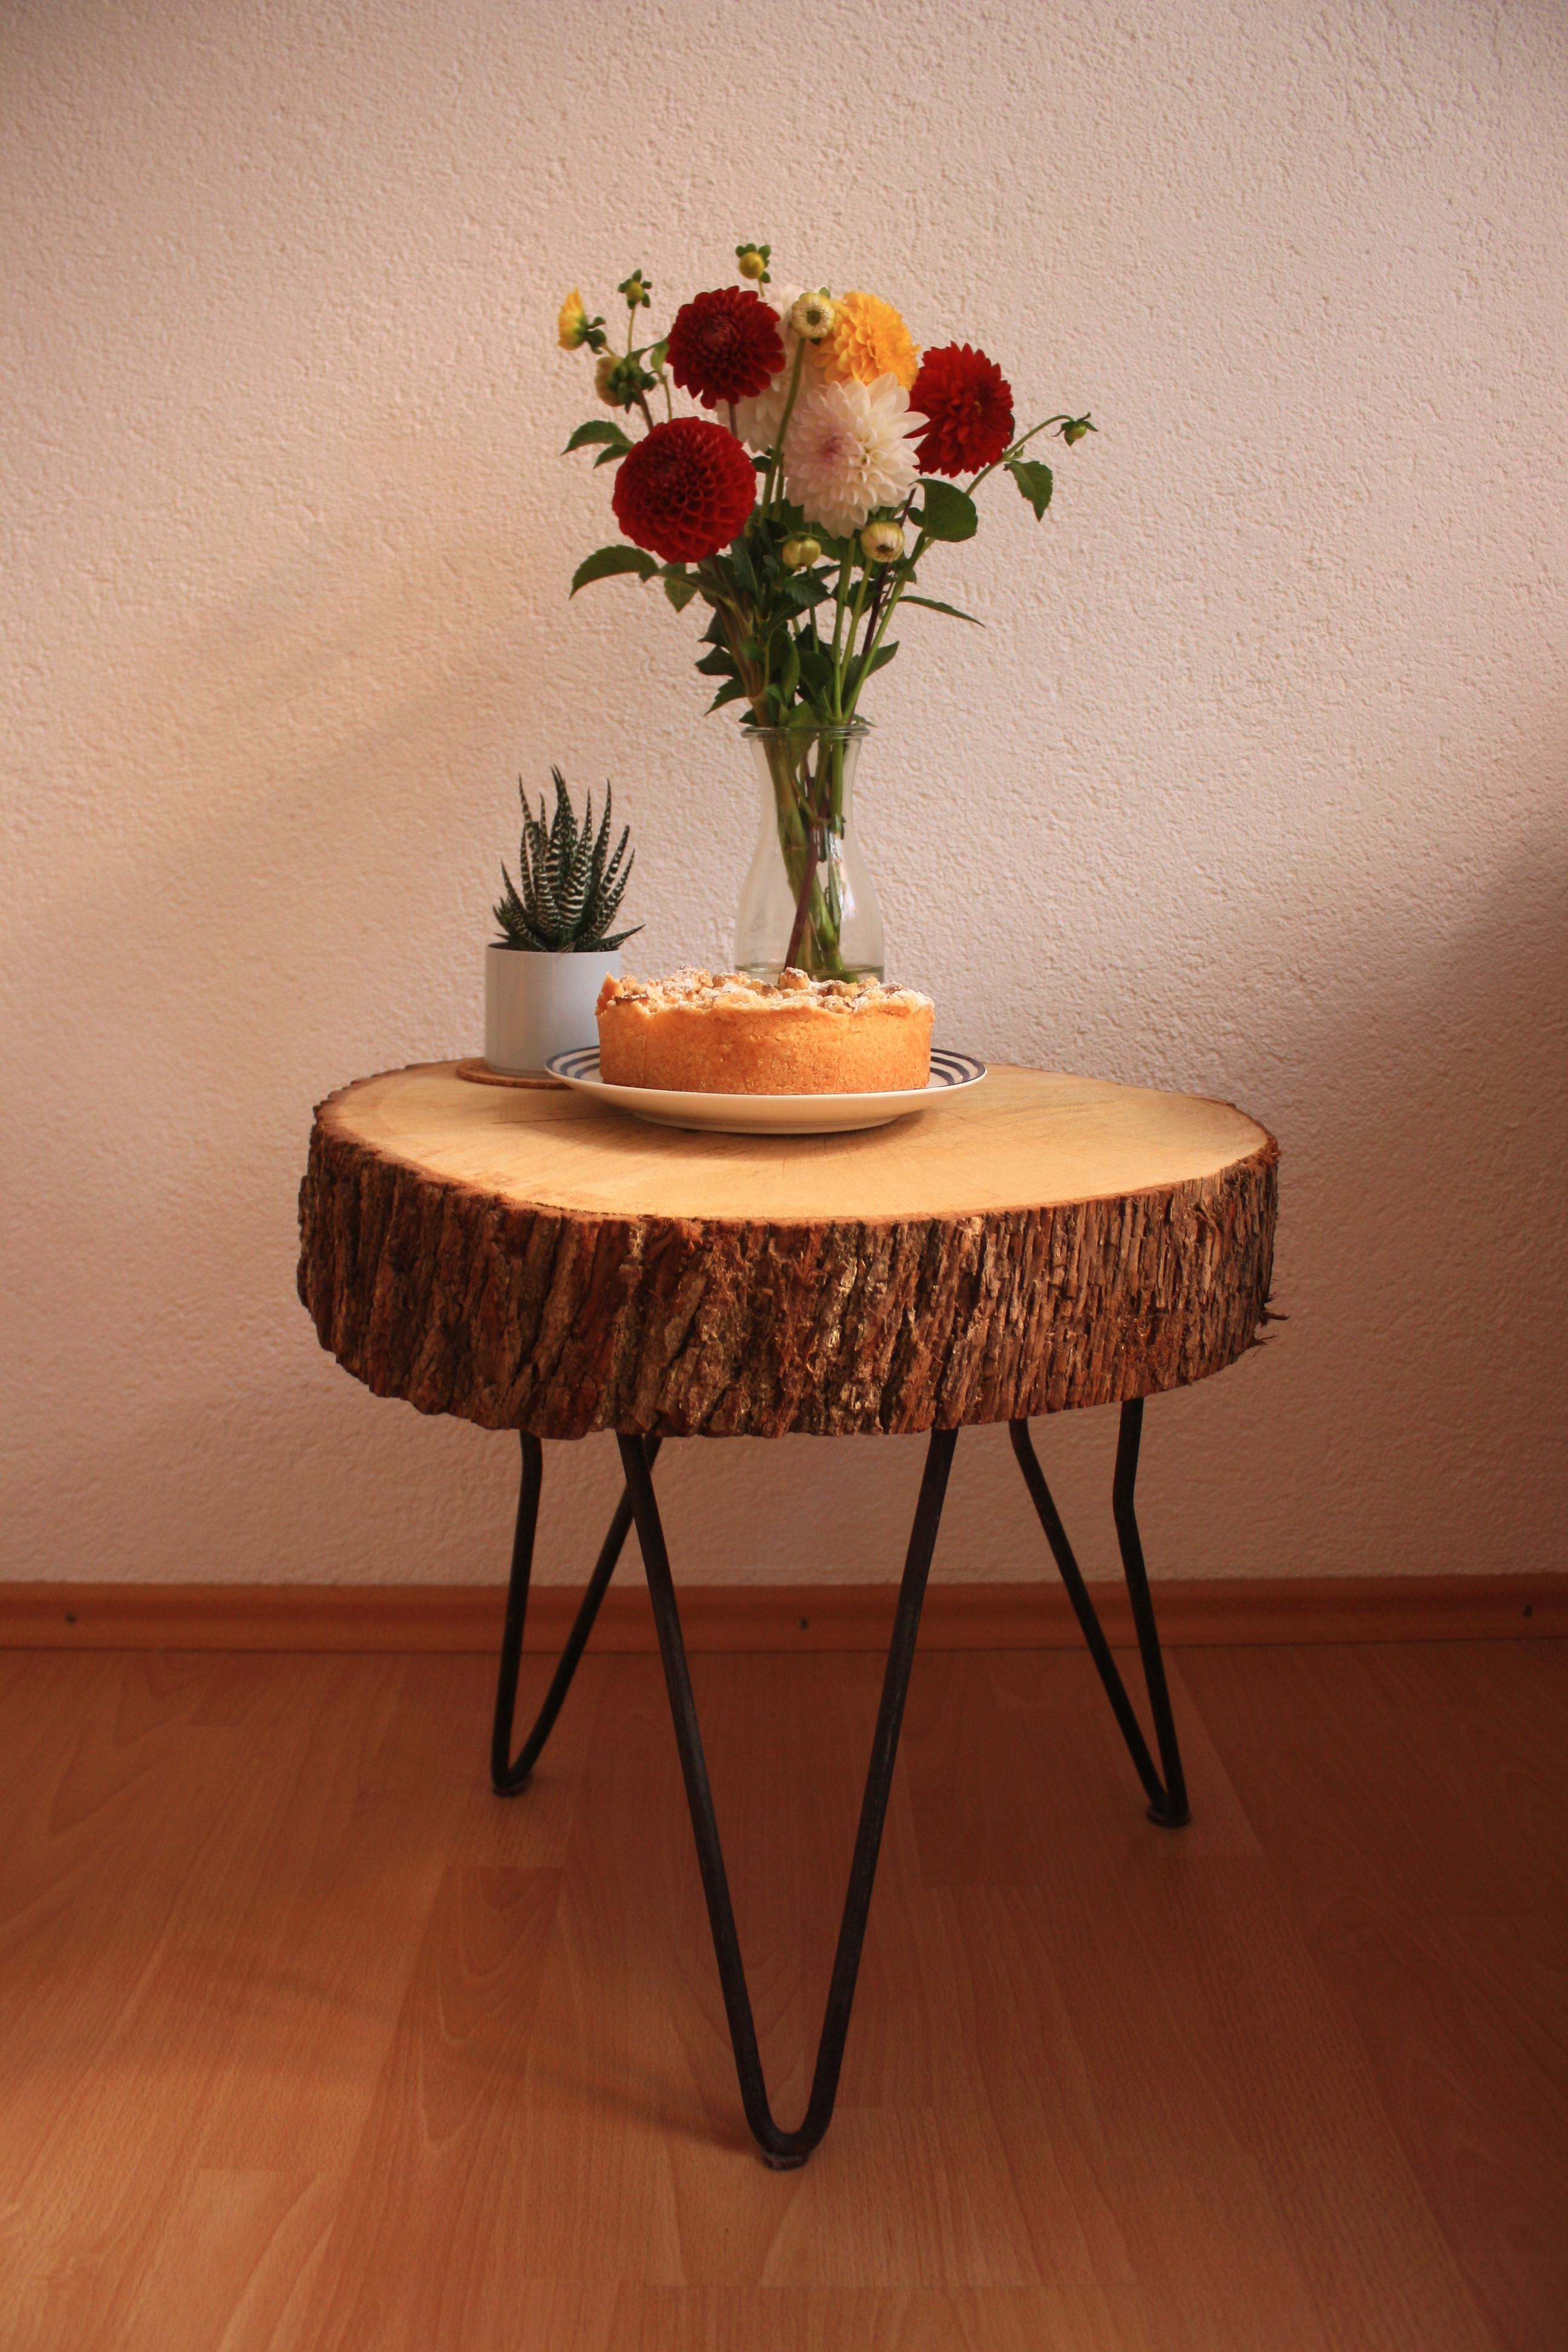 Apfelkuchen, frische Blumen und der geliebte diy Holztisch #flowers #frischerkuchen